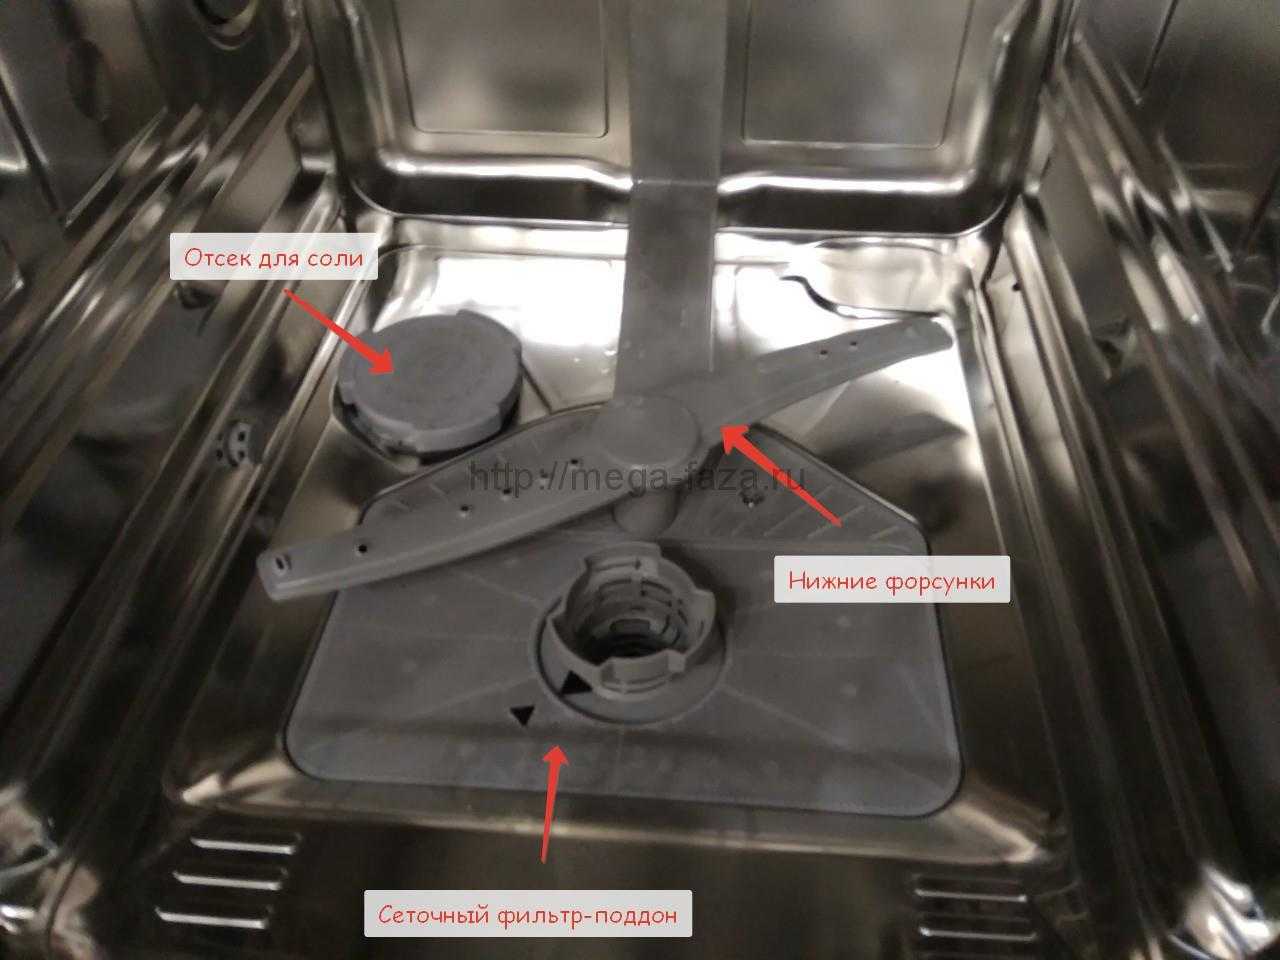 Почему машина плохо моет посуду. Bosch посудомойка отсек для соли в посудомоечной. Посудомойка Bosch отсек для соли. Отсек для соли в посудомоечной машине Abat. Не растворяется таблетка в посудомоечной машине.